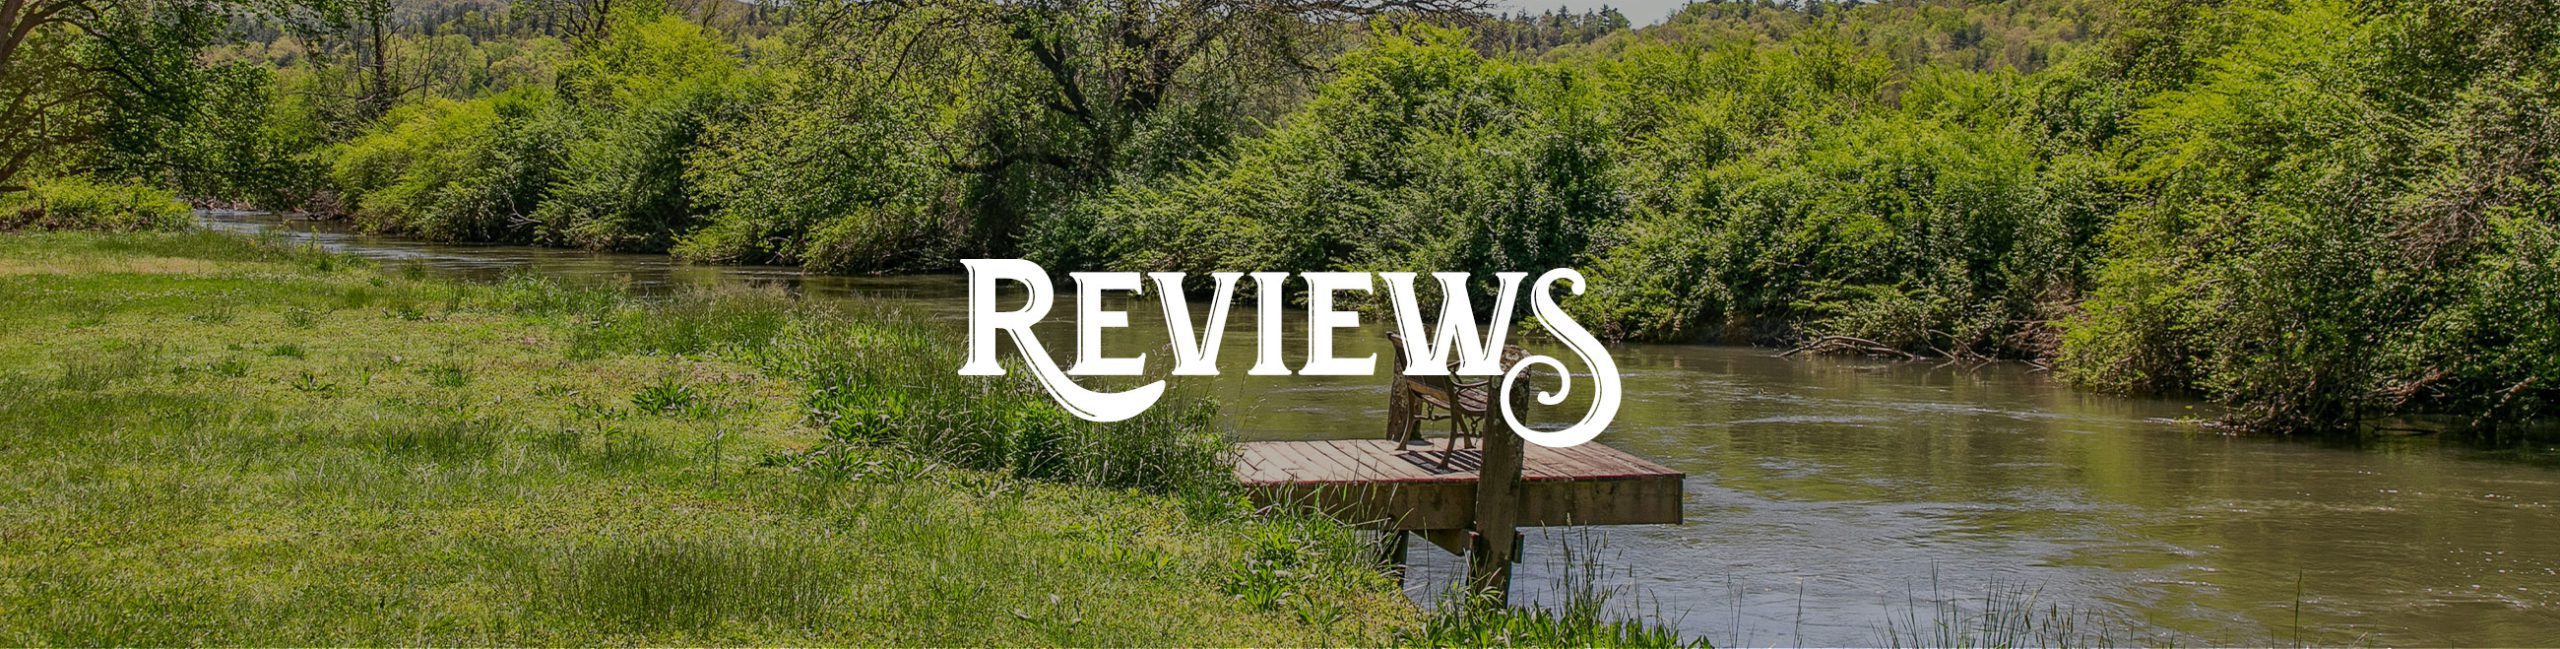 Deerwoode Reserve | river, words, reviews